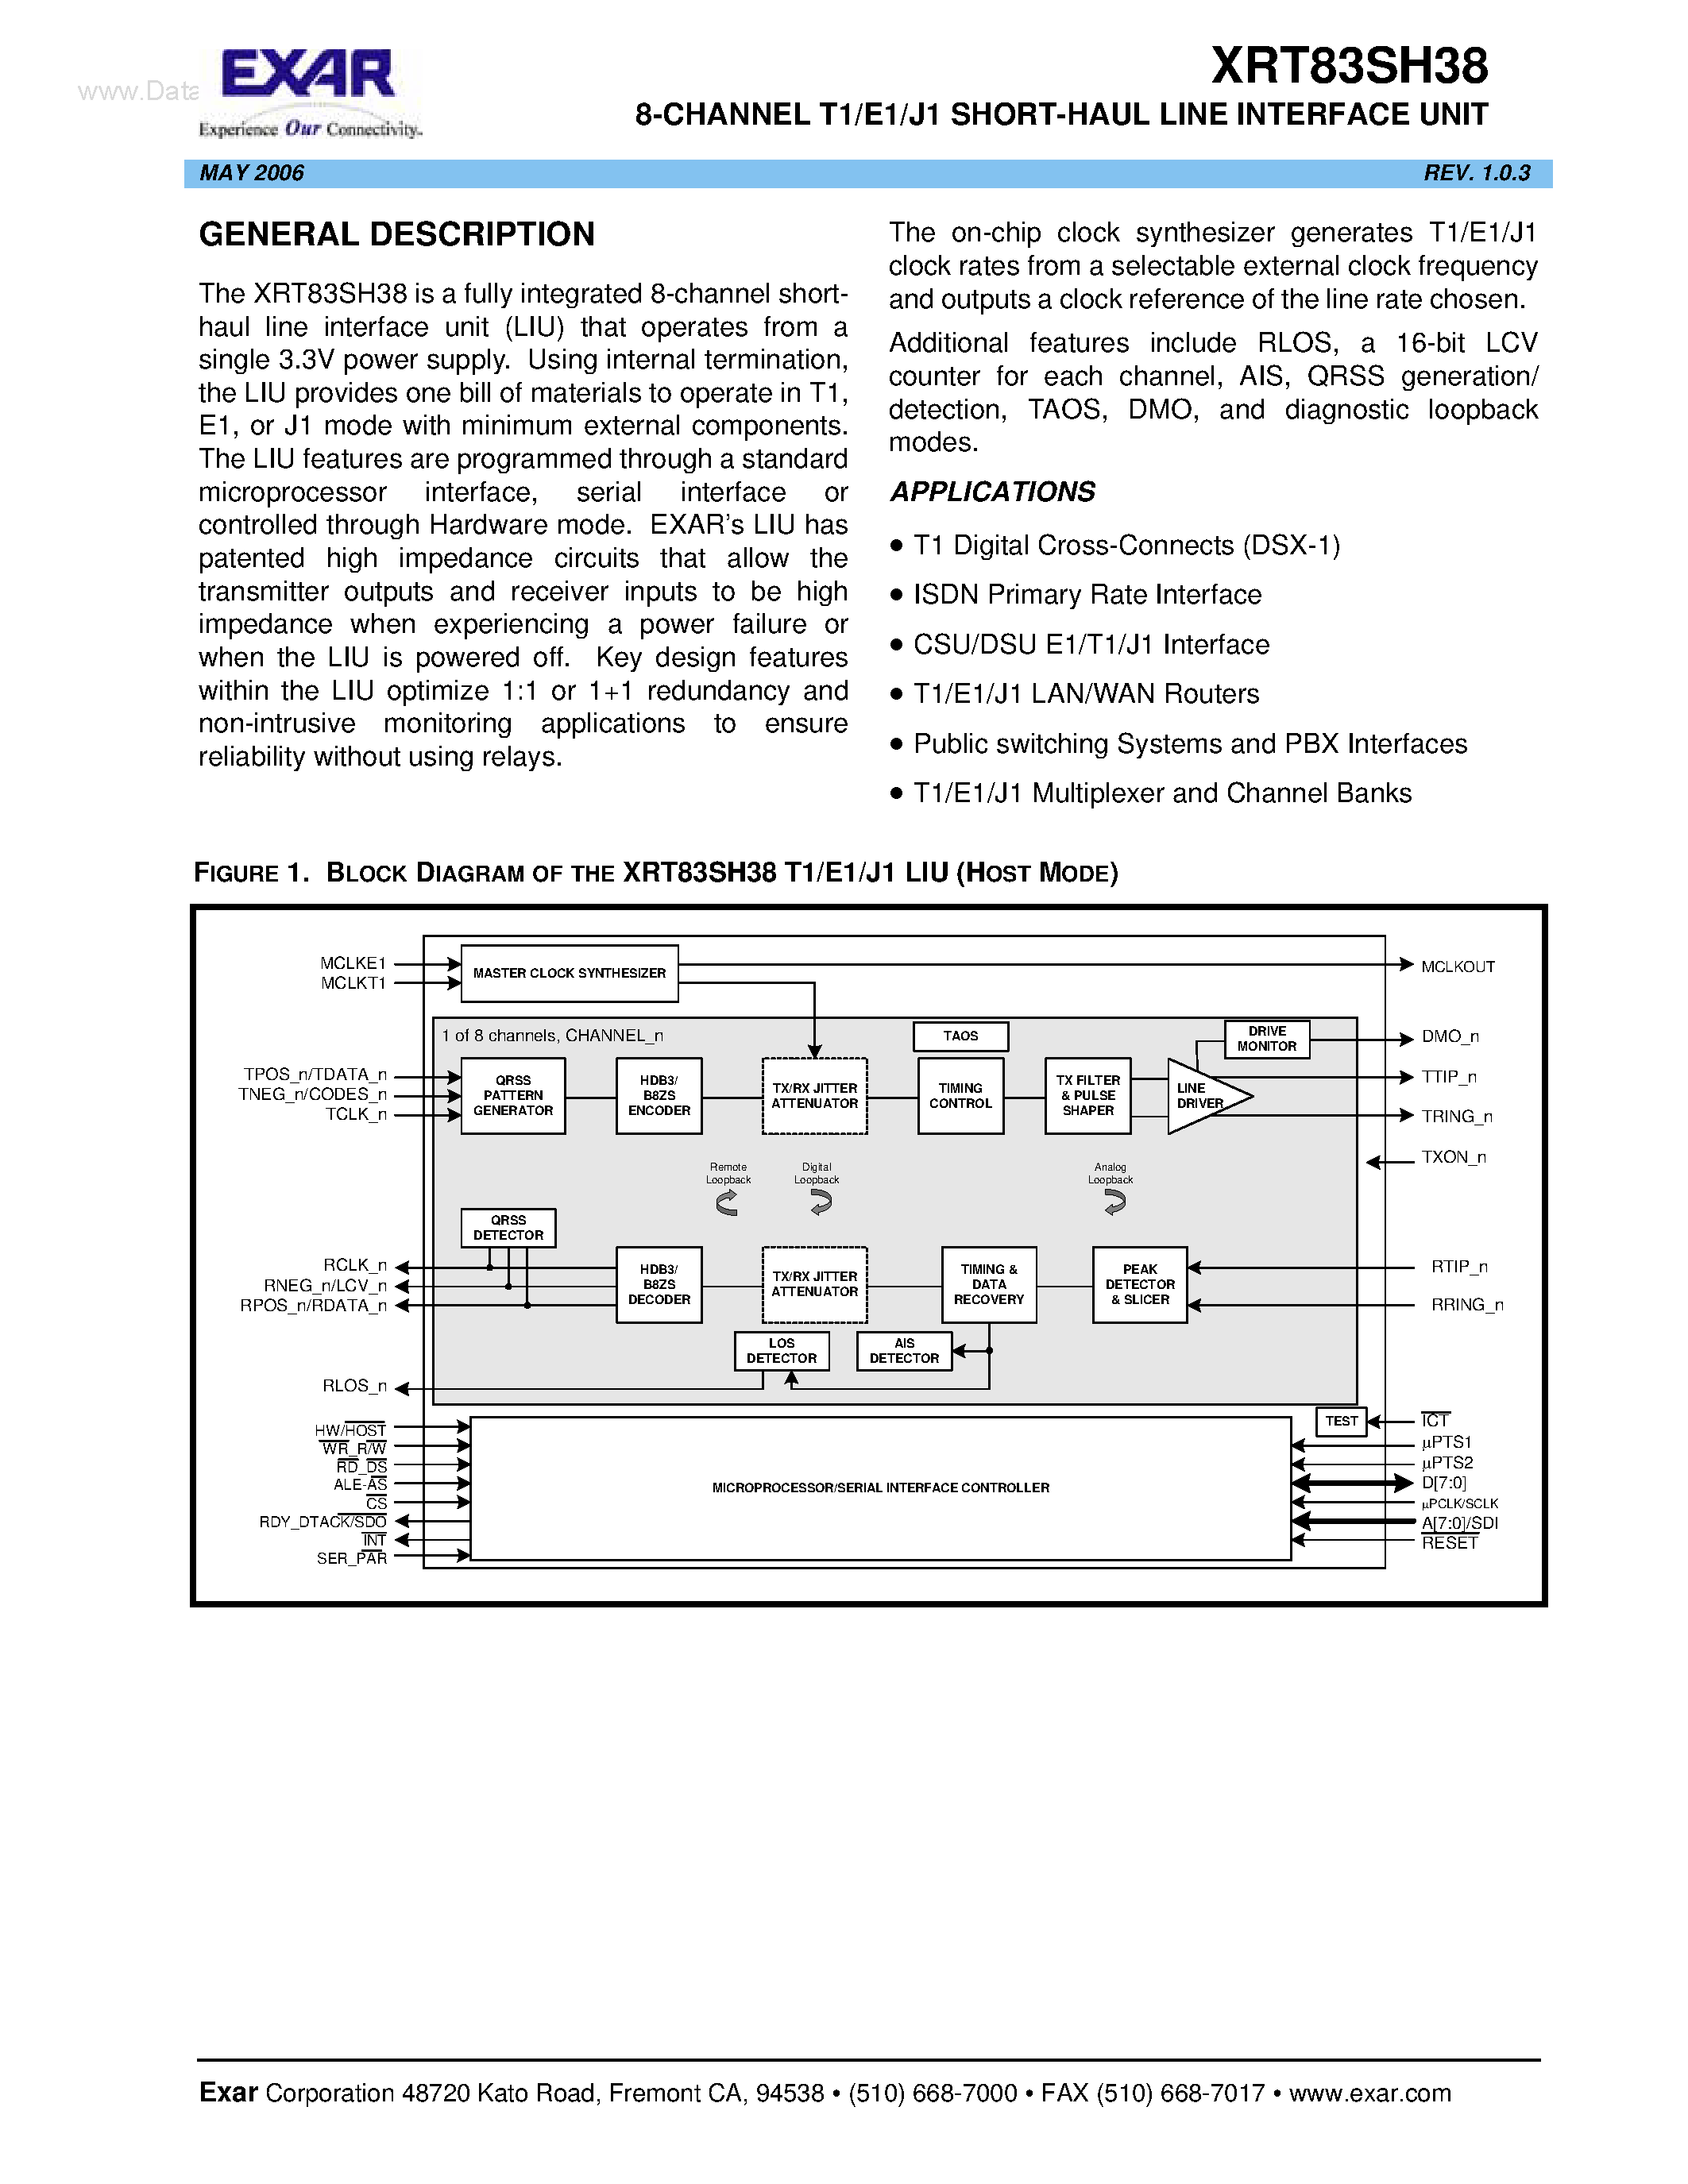 Datasheet XRT83SH38 - 8-CHANNEL T1/E1/J1 SHORT-HAUL LINE INTERFACE UNIT page 1